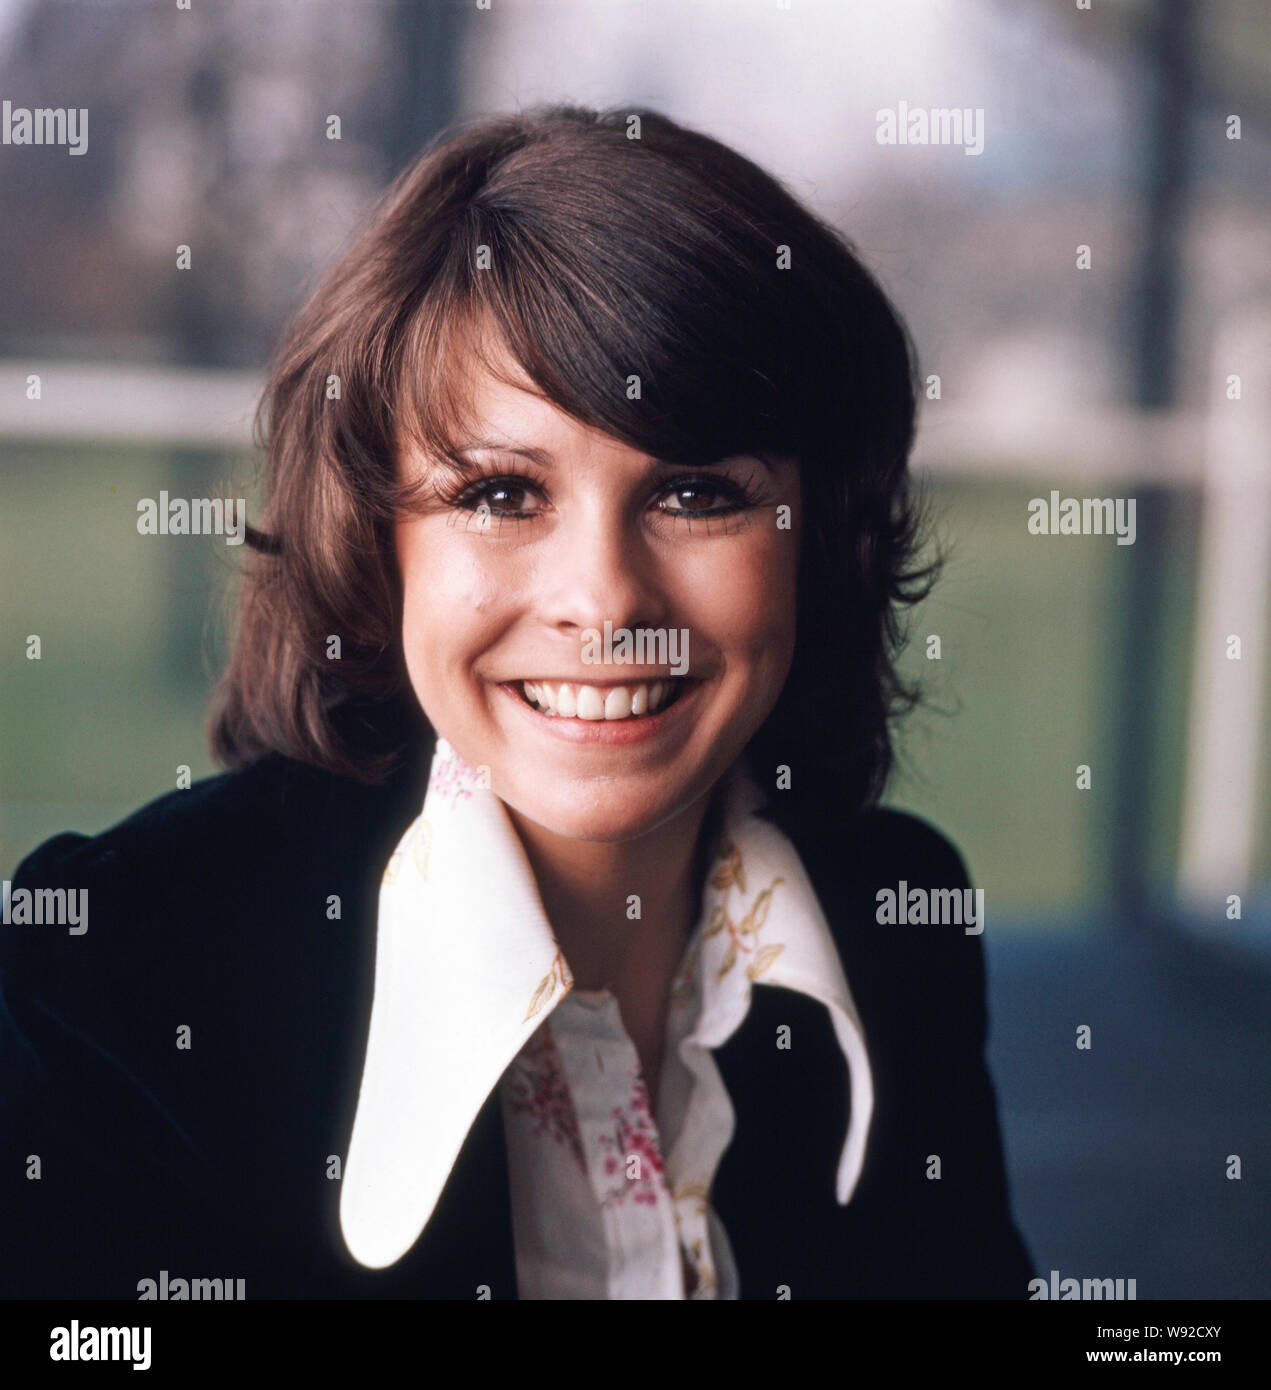 Porträtfoto der deutsch-britischen Schlagersängerin Ireen Sheer, 1970er Jahre. Portrait Foto des deutsch-britischen Sängerin Ireen Sheer, 70er Jahre. Stockfoto